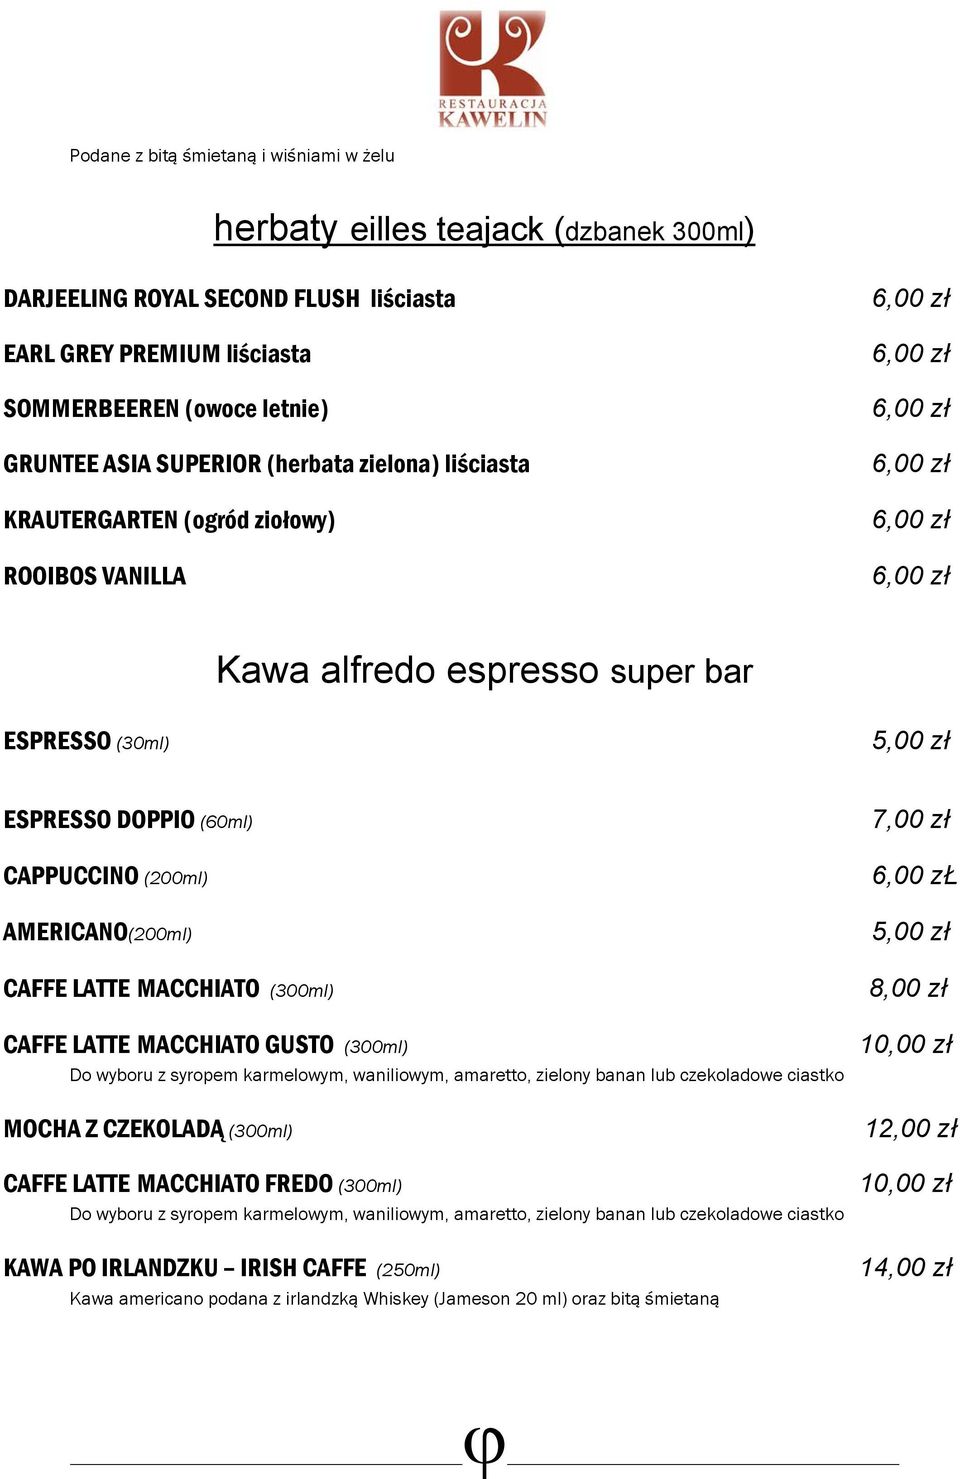 LATTE MACCHIATO (300ml) CAFFE LATTE MACCHIATO GUSTO (300ml) Do wyboru z syropem karmelowym, waniliowym, amaretto, zielony banan lub czekoladowe ciastko MOCHA Z CZEKOLADĄ (300ml) CAFFE LATTE MACCHIATO